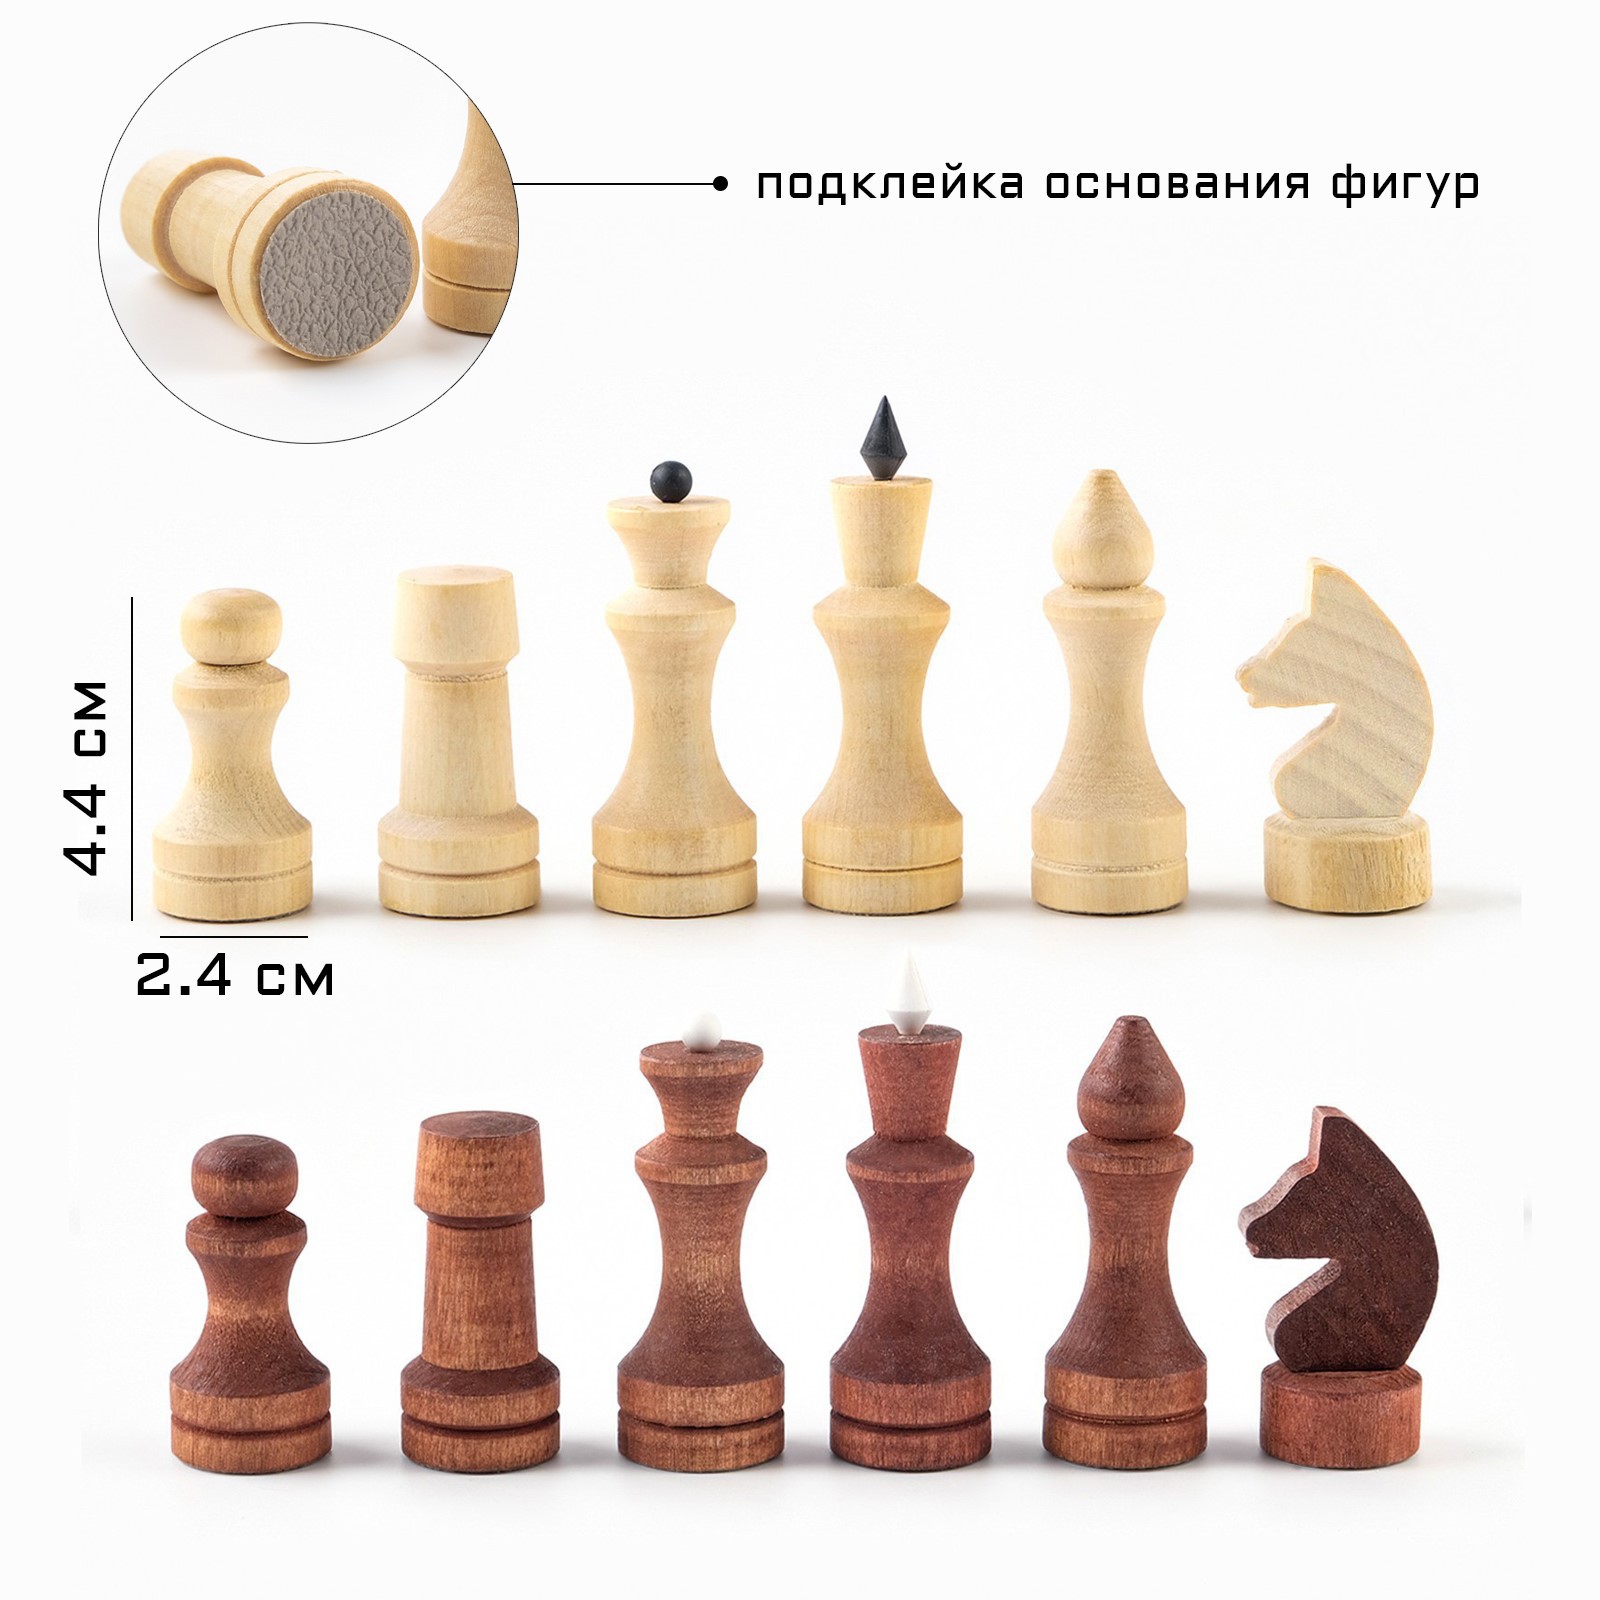 Шахматные фигуры Sima-Land обиходные король h 7 см d 2 4 см пешка h 4 4 см d 2 4 см - фото 2